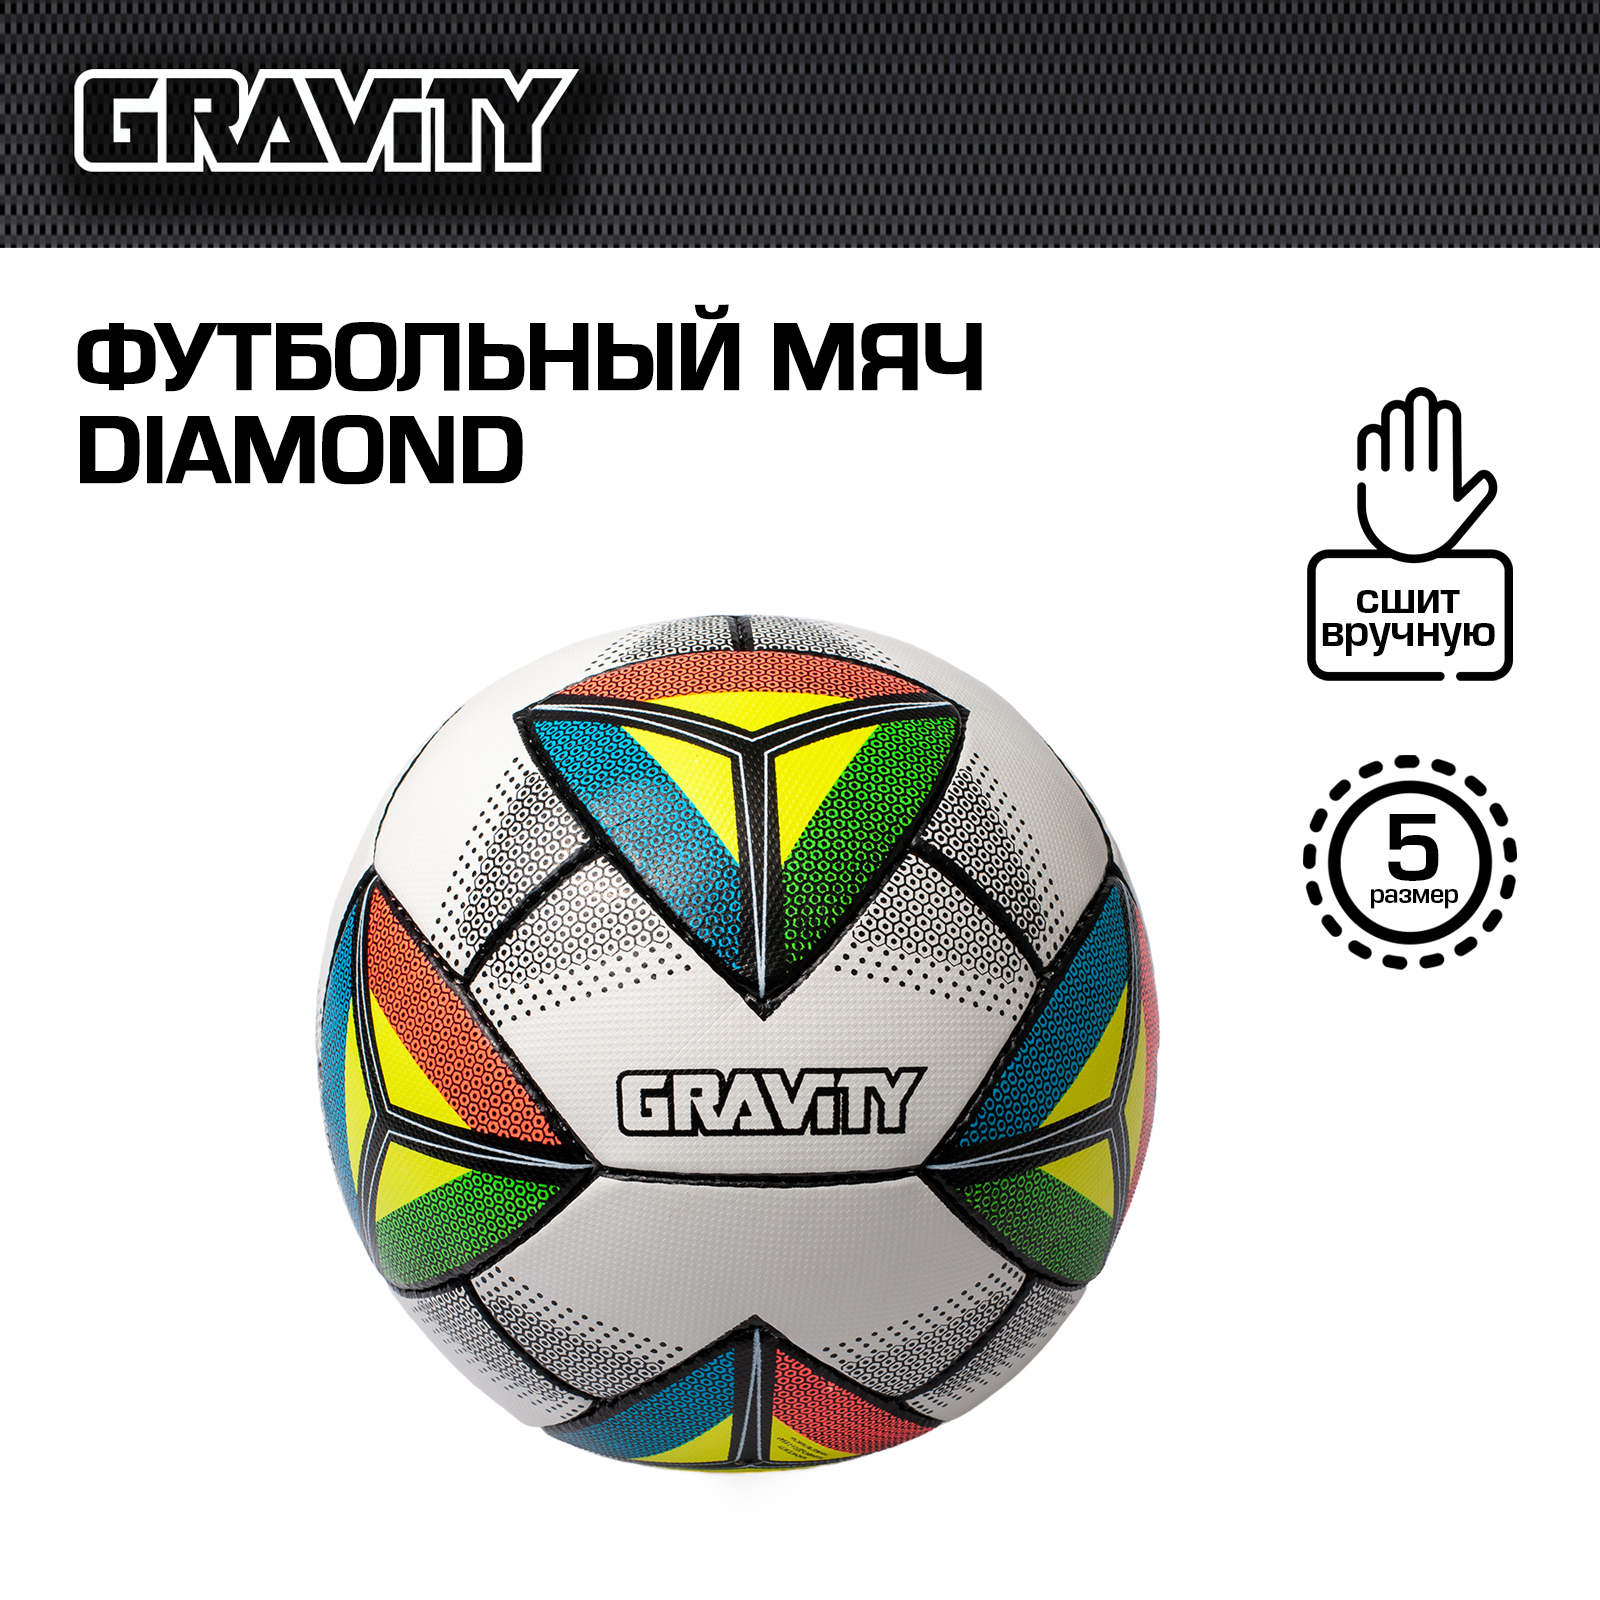 Футбольный мяч Gravity, ручная сшивка, DIAMOND